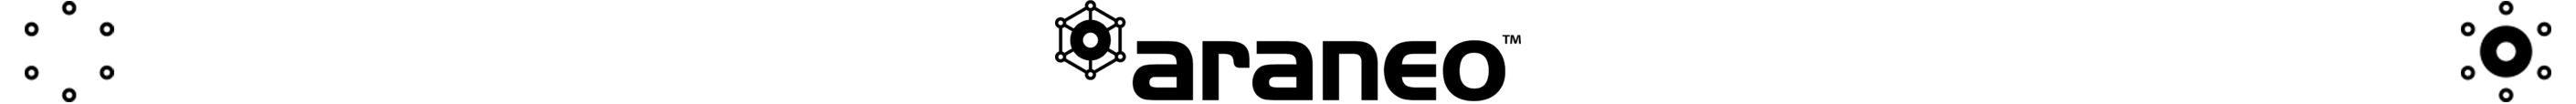 Araneo_logo-510x111.jpg